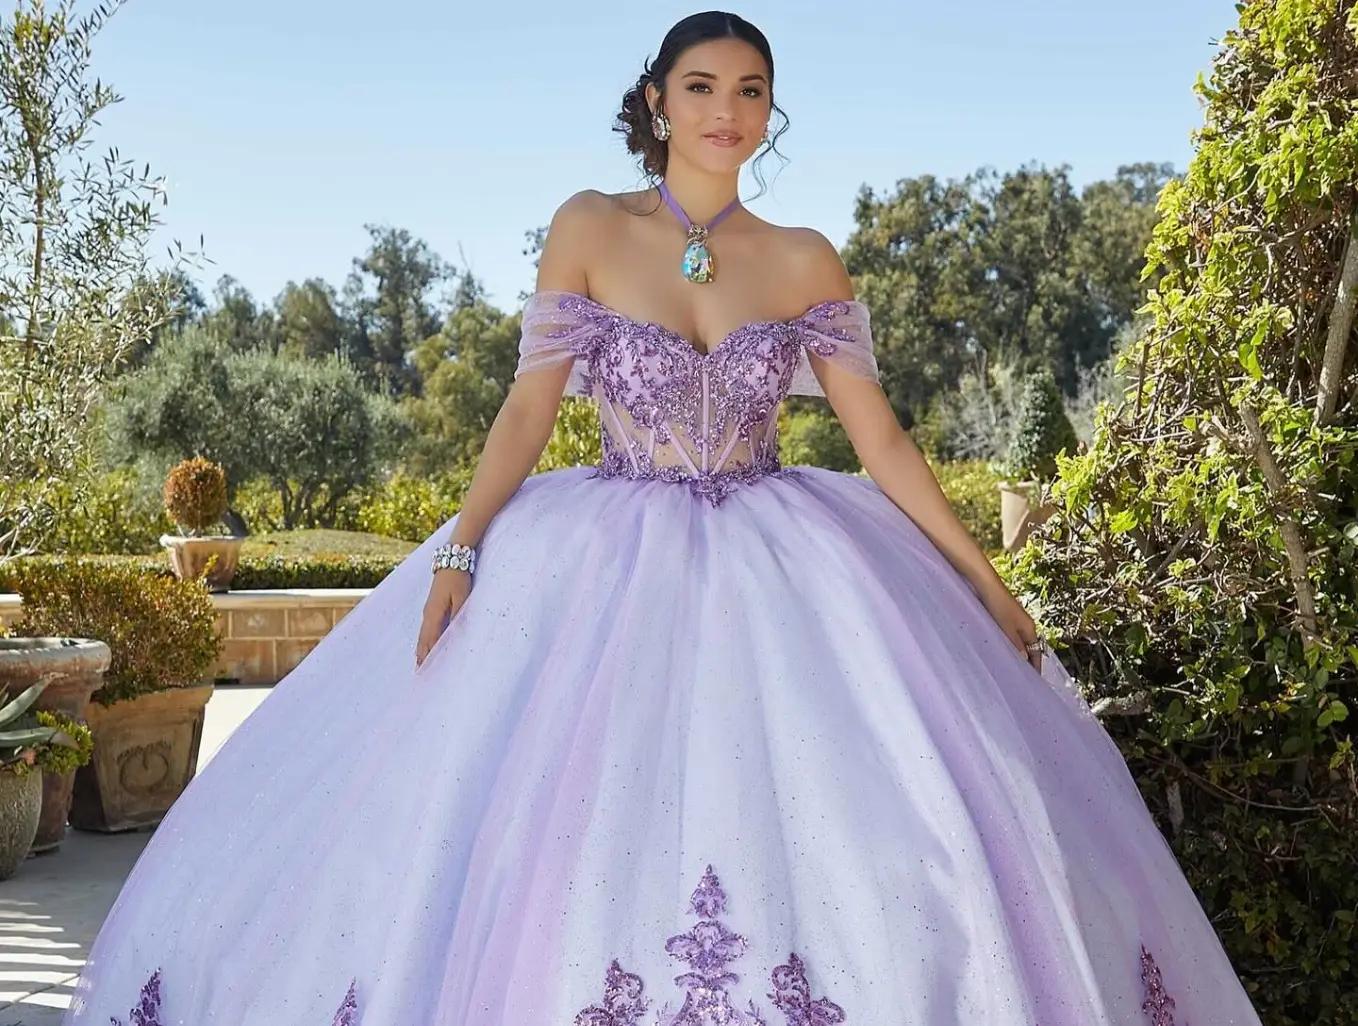 Model wearing a quinceañera gown